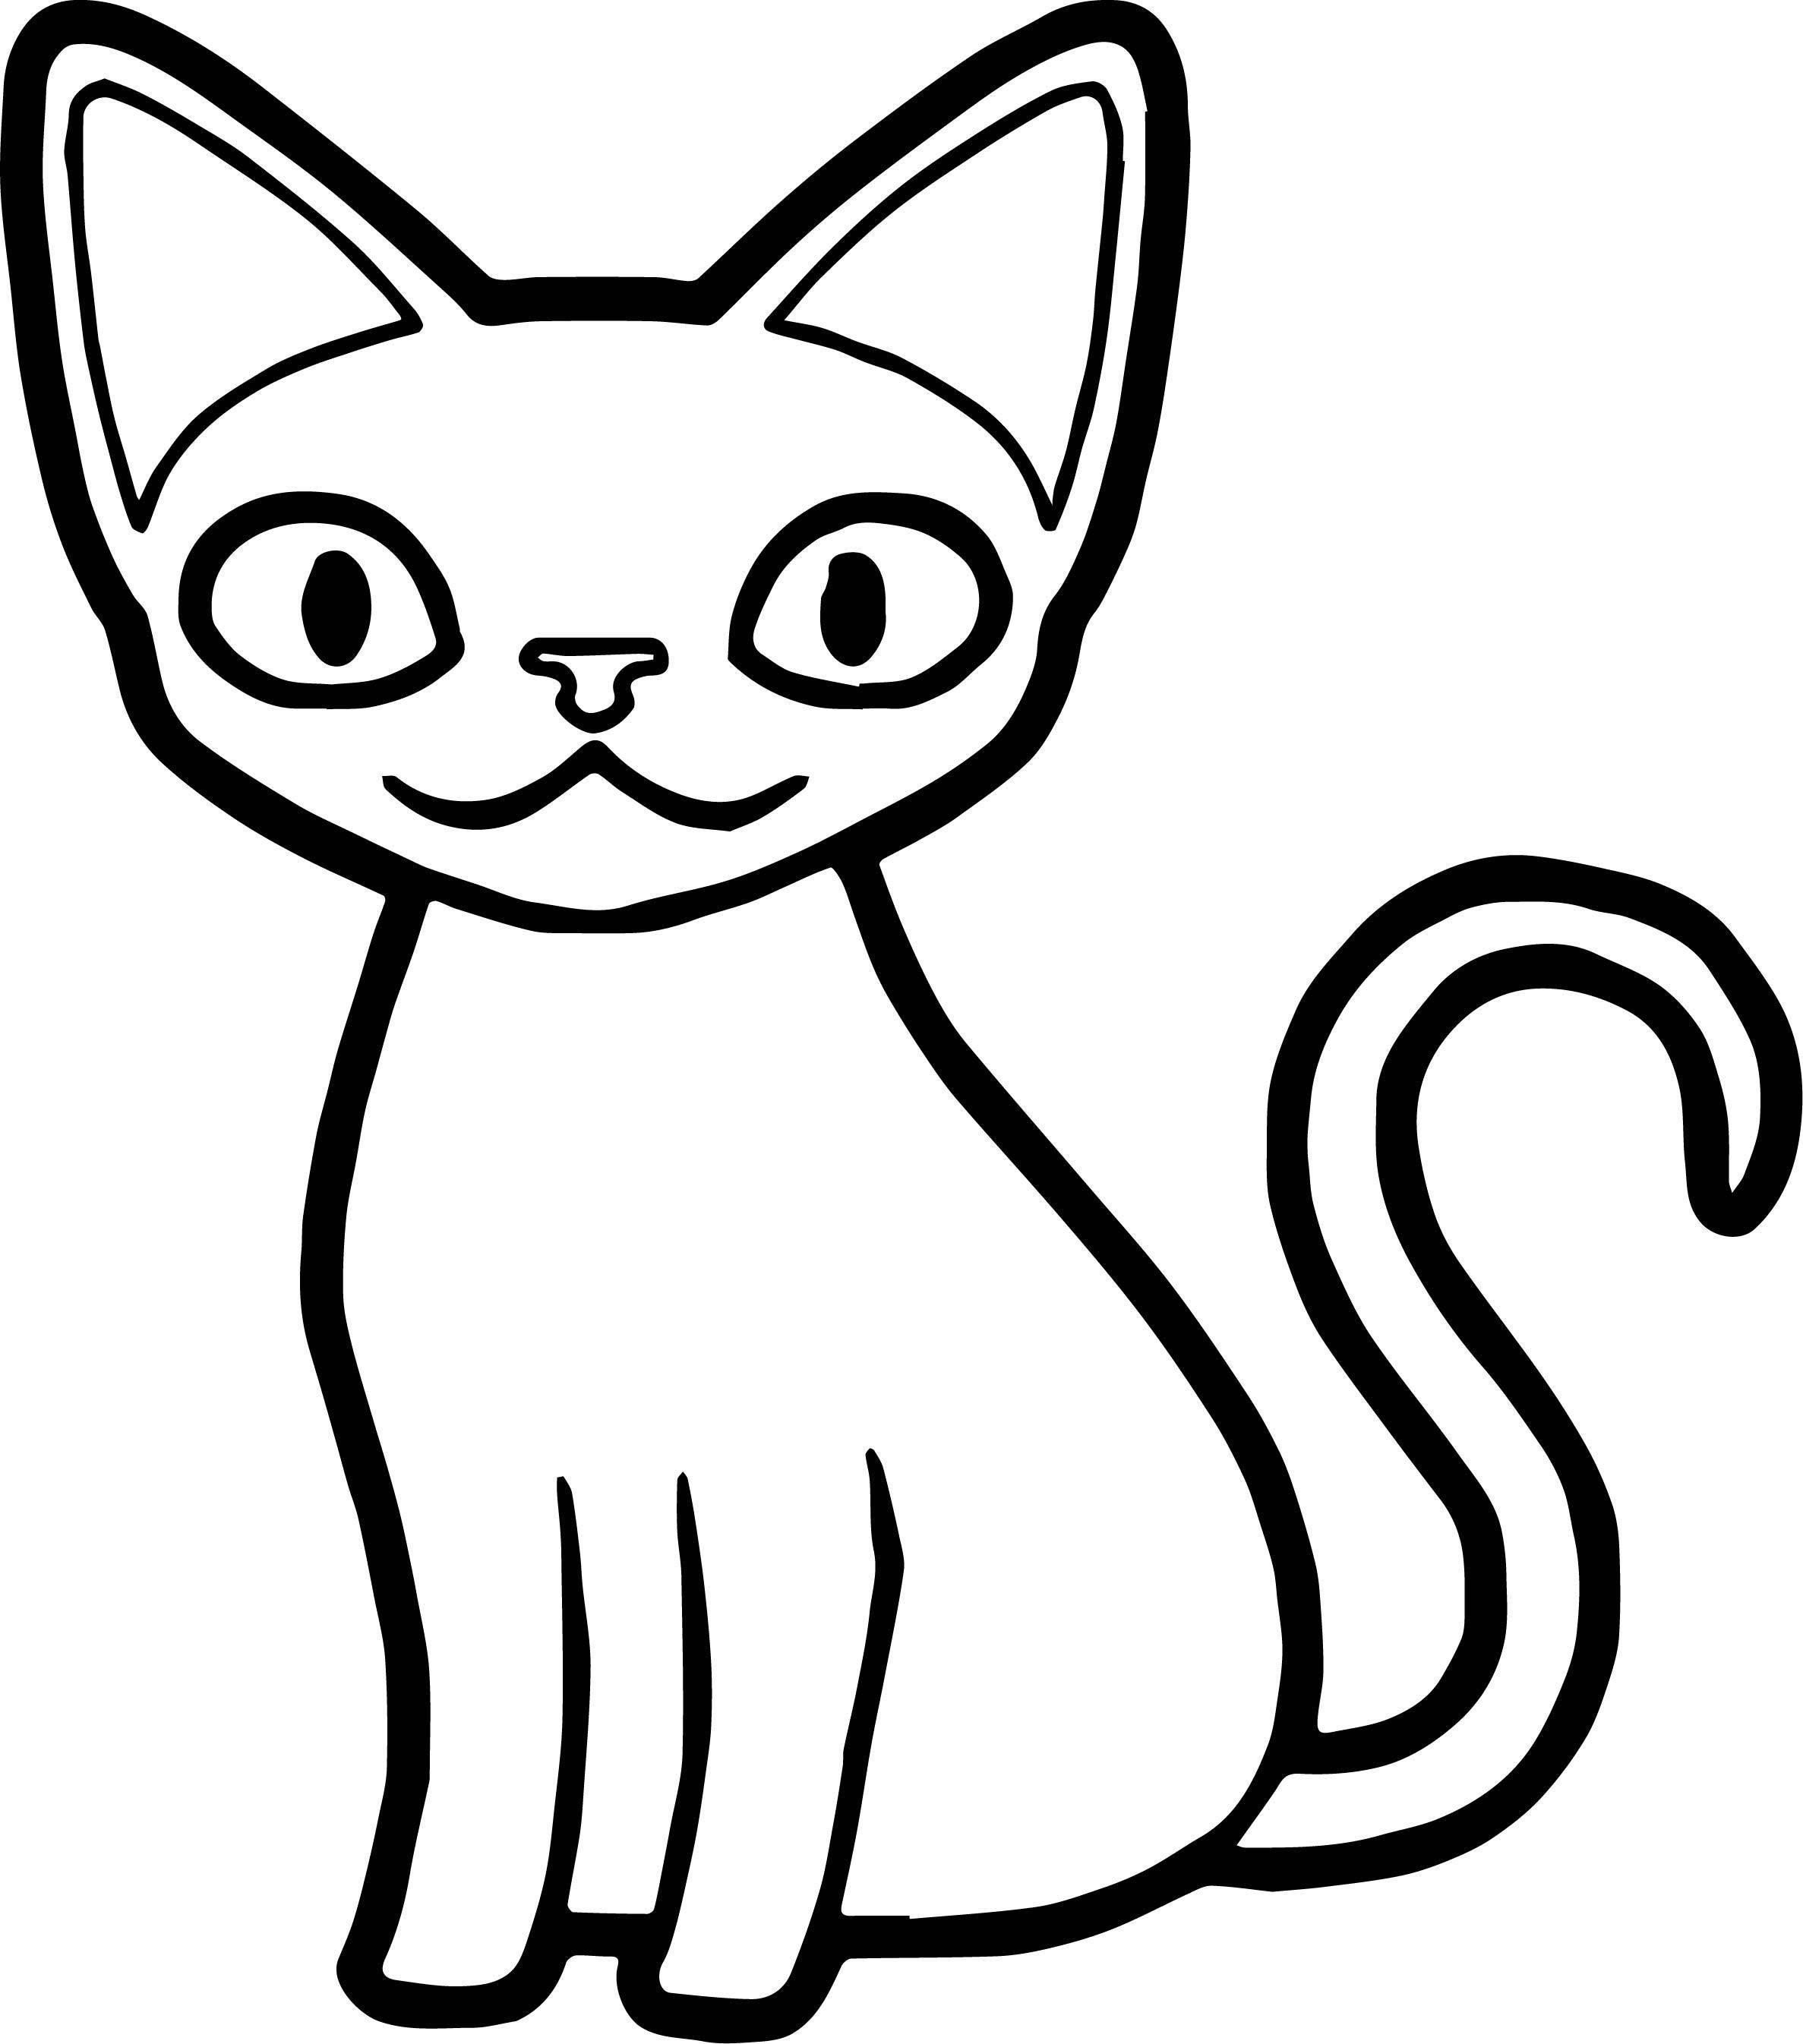 Картинка а 4 нарисована. Кошки. Раскраска. Раскраска кот. Раскраска кошечка. Рисунок кошки для срисовки легкие.